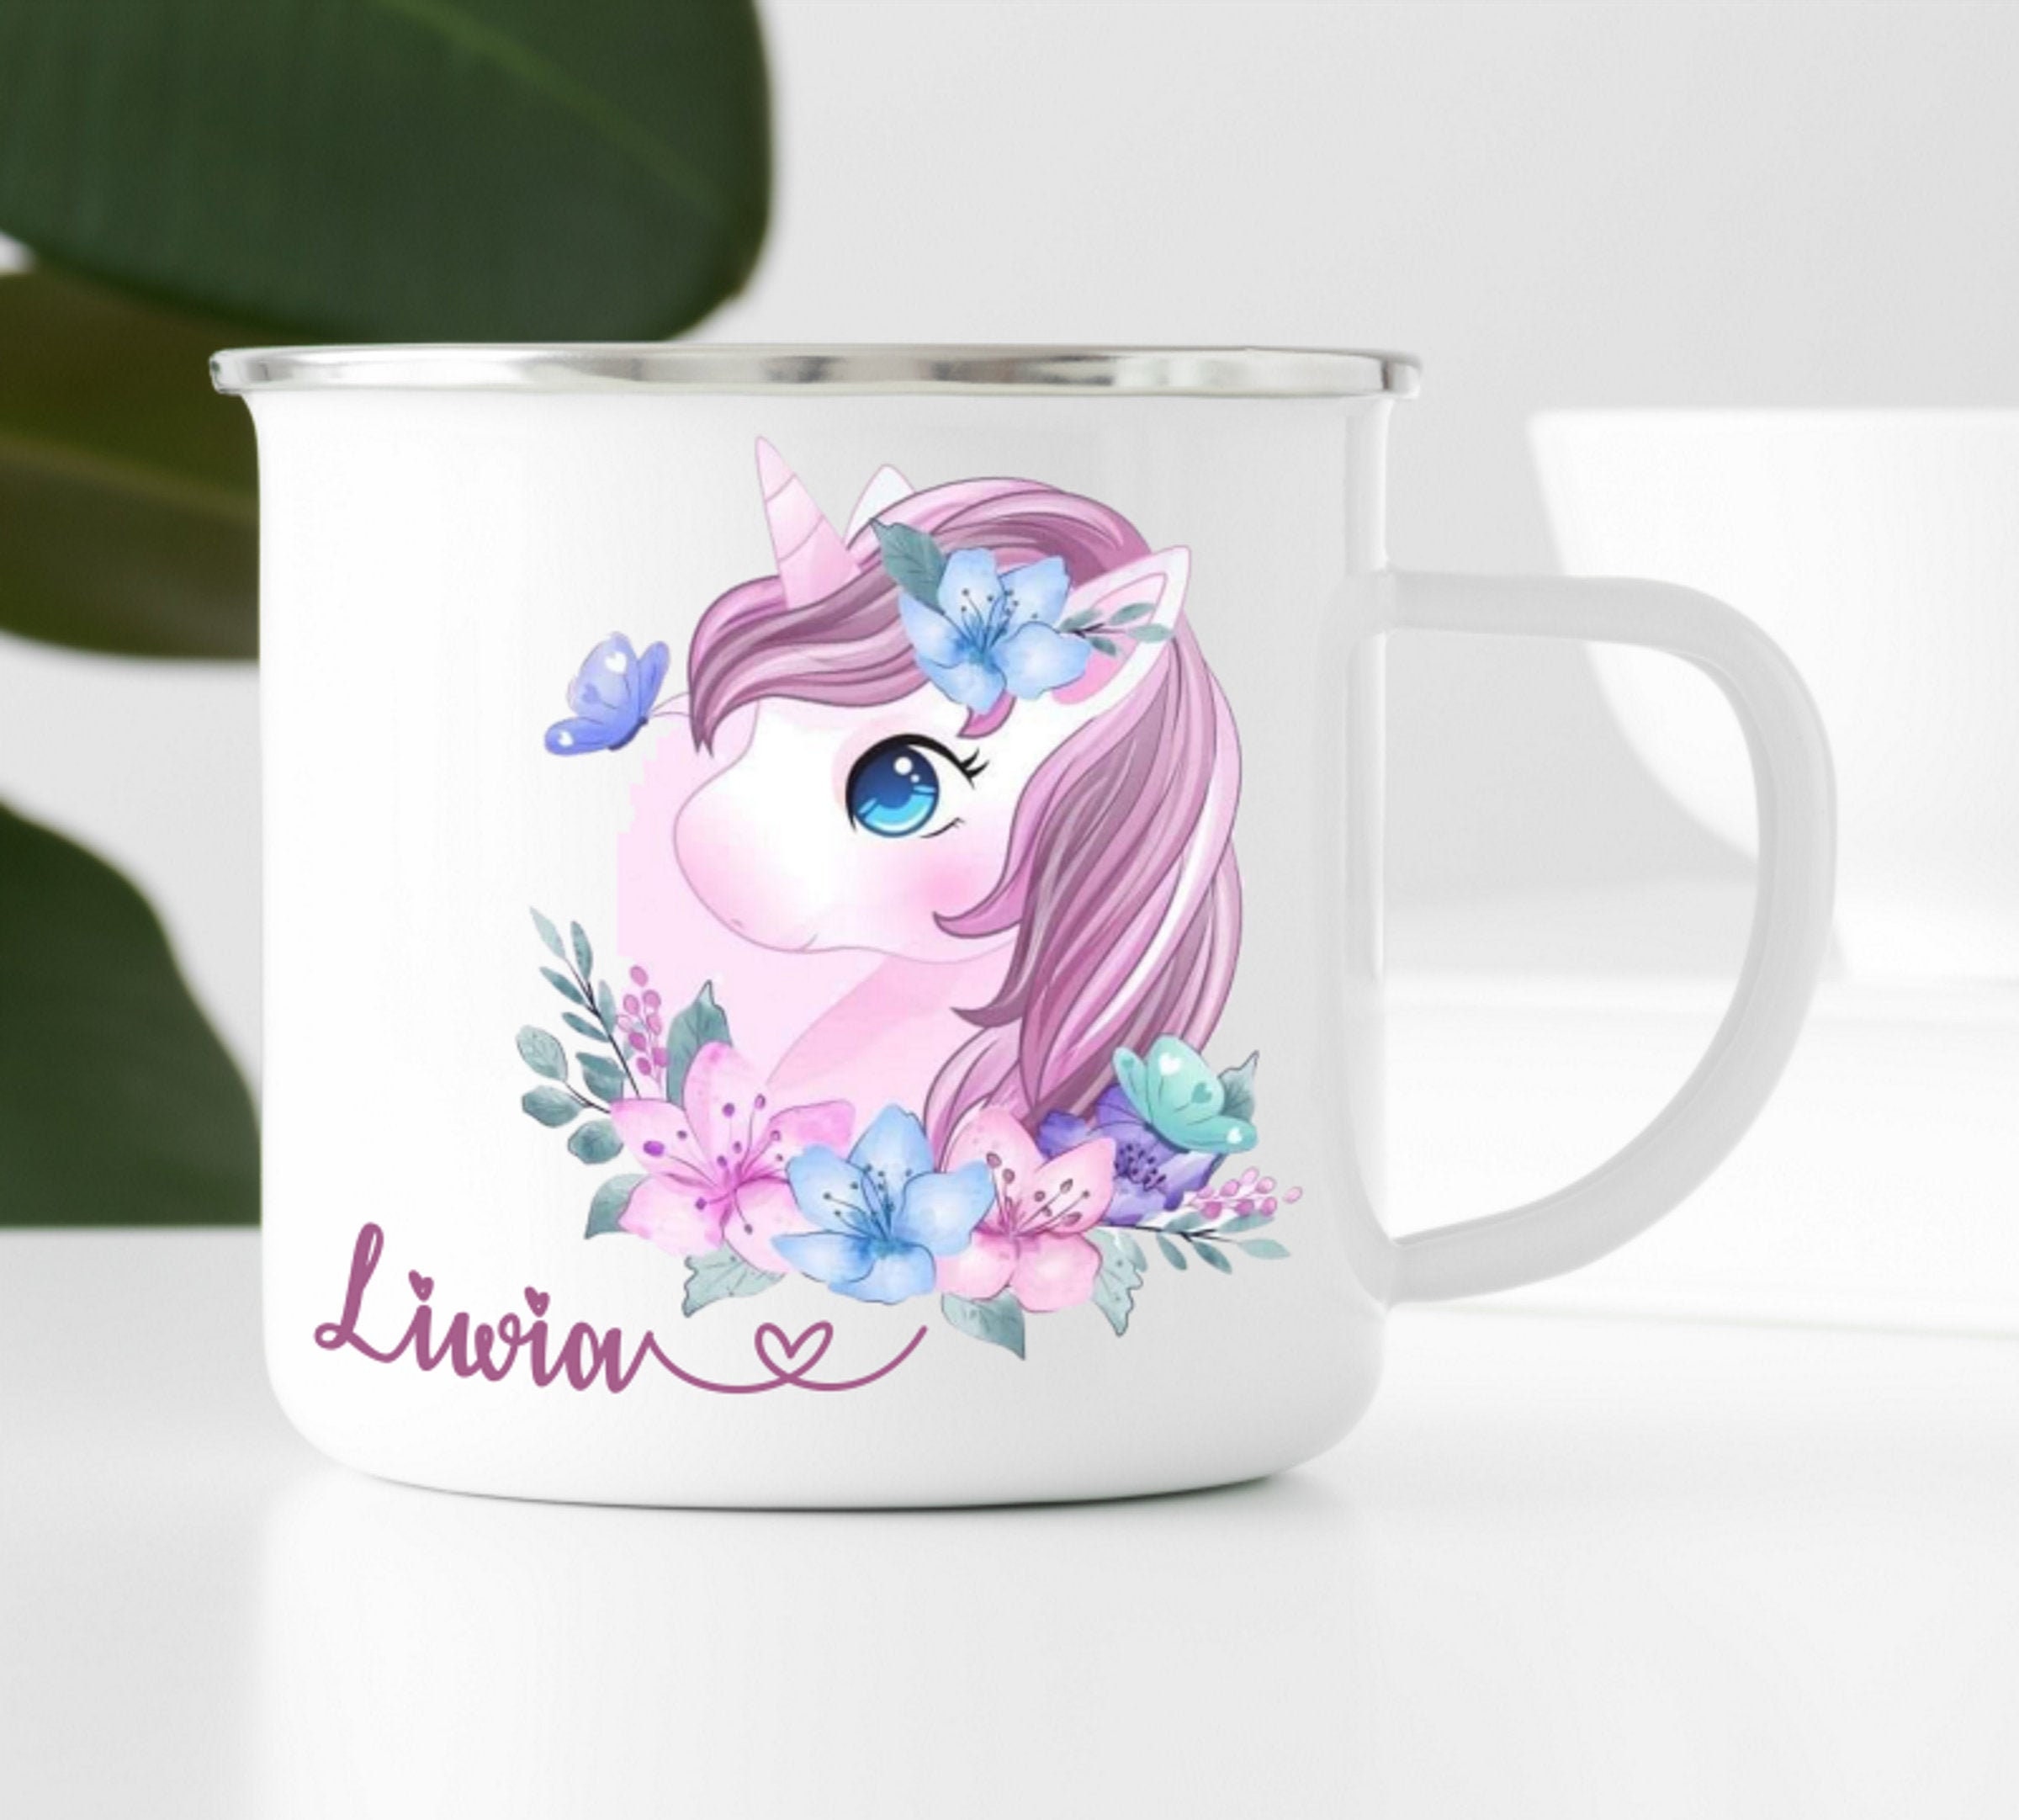 Details about   Unicorn Mug Personalized Unicorn Coffee Mug Unicorn Gifts For Women Girls 